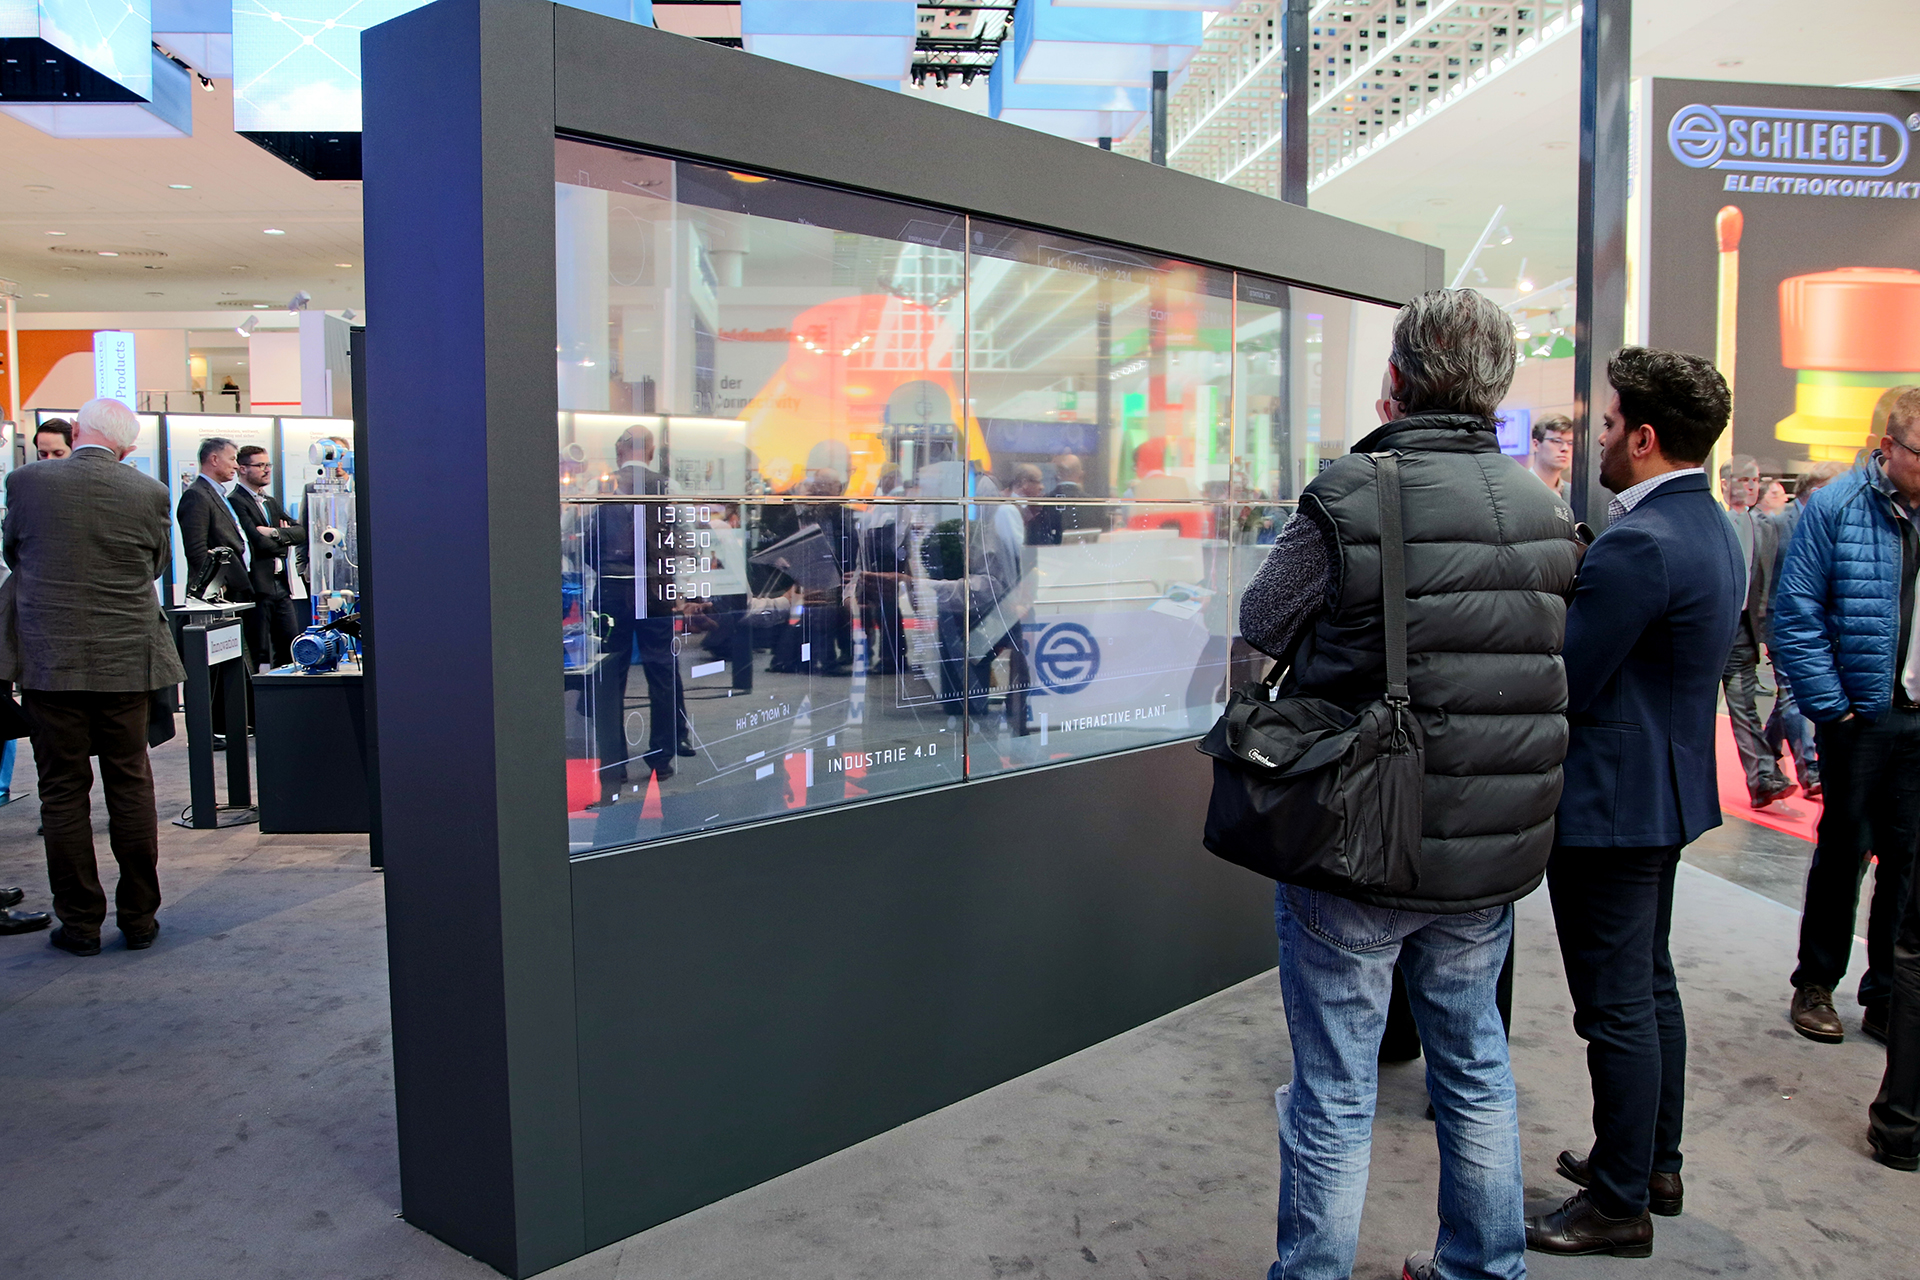 Mit einer transparenten, interaktiven OLED Powerwall präsentierte Endress & Hauser auf der HMI seine Produkte und Leistungen.